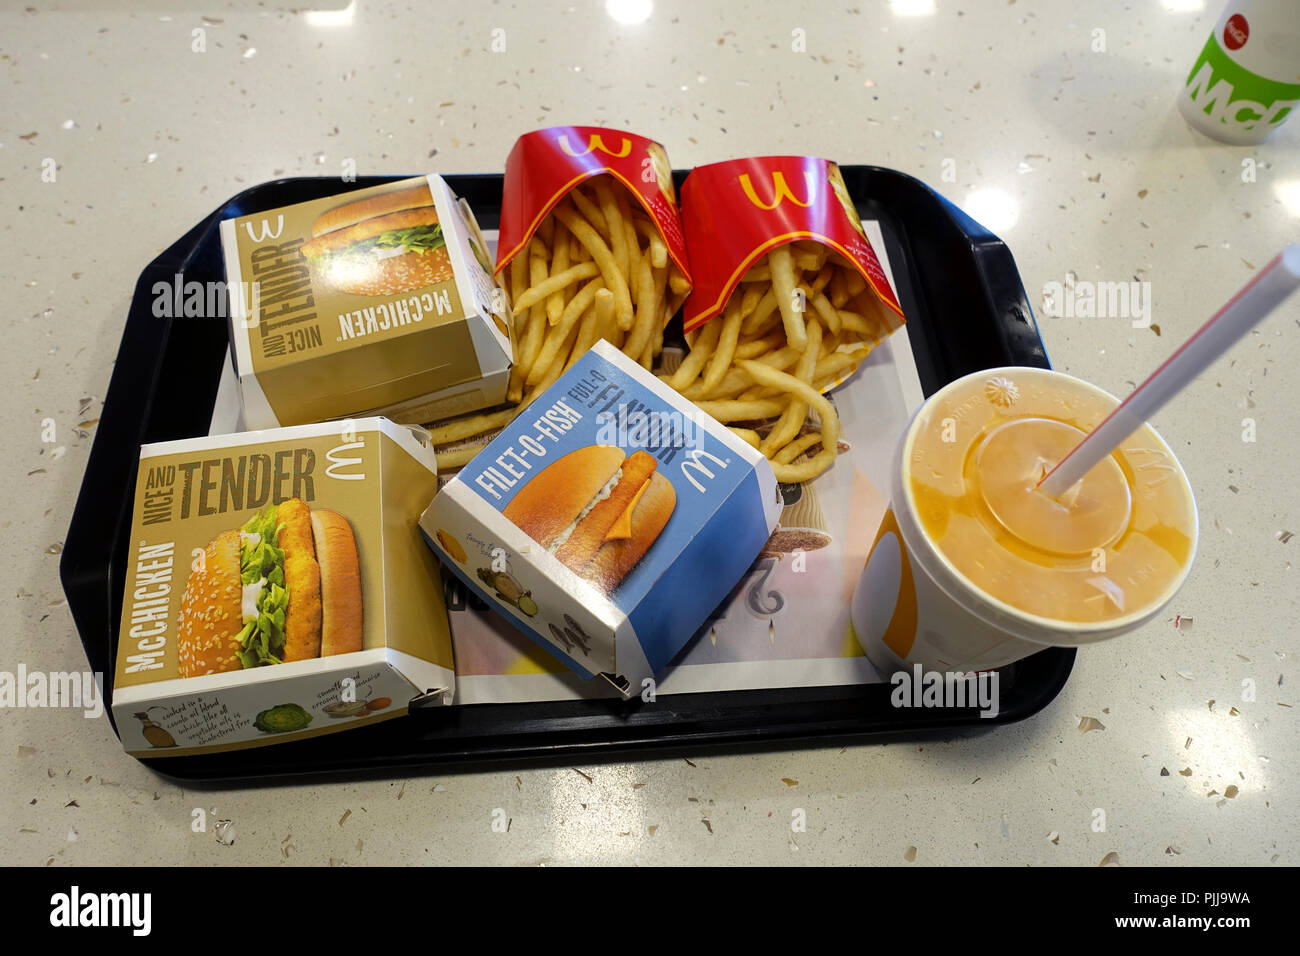 Australische McDonald's Burger, Pommes frites und einem Getränk auf einem Tablett Stockfoto